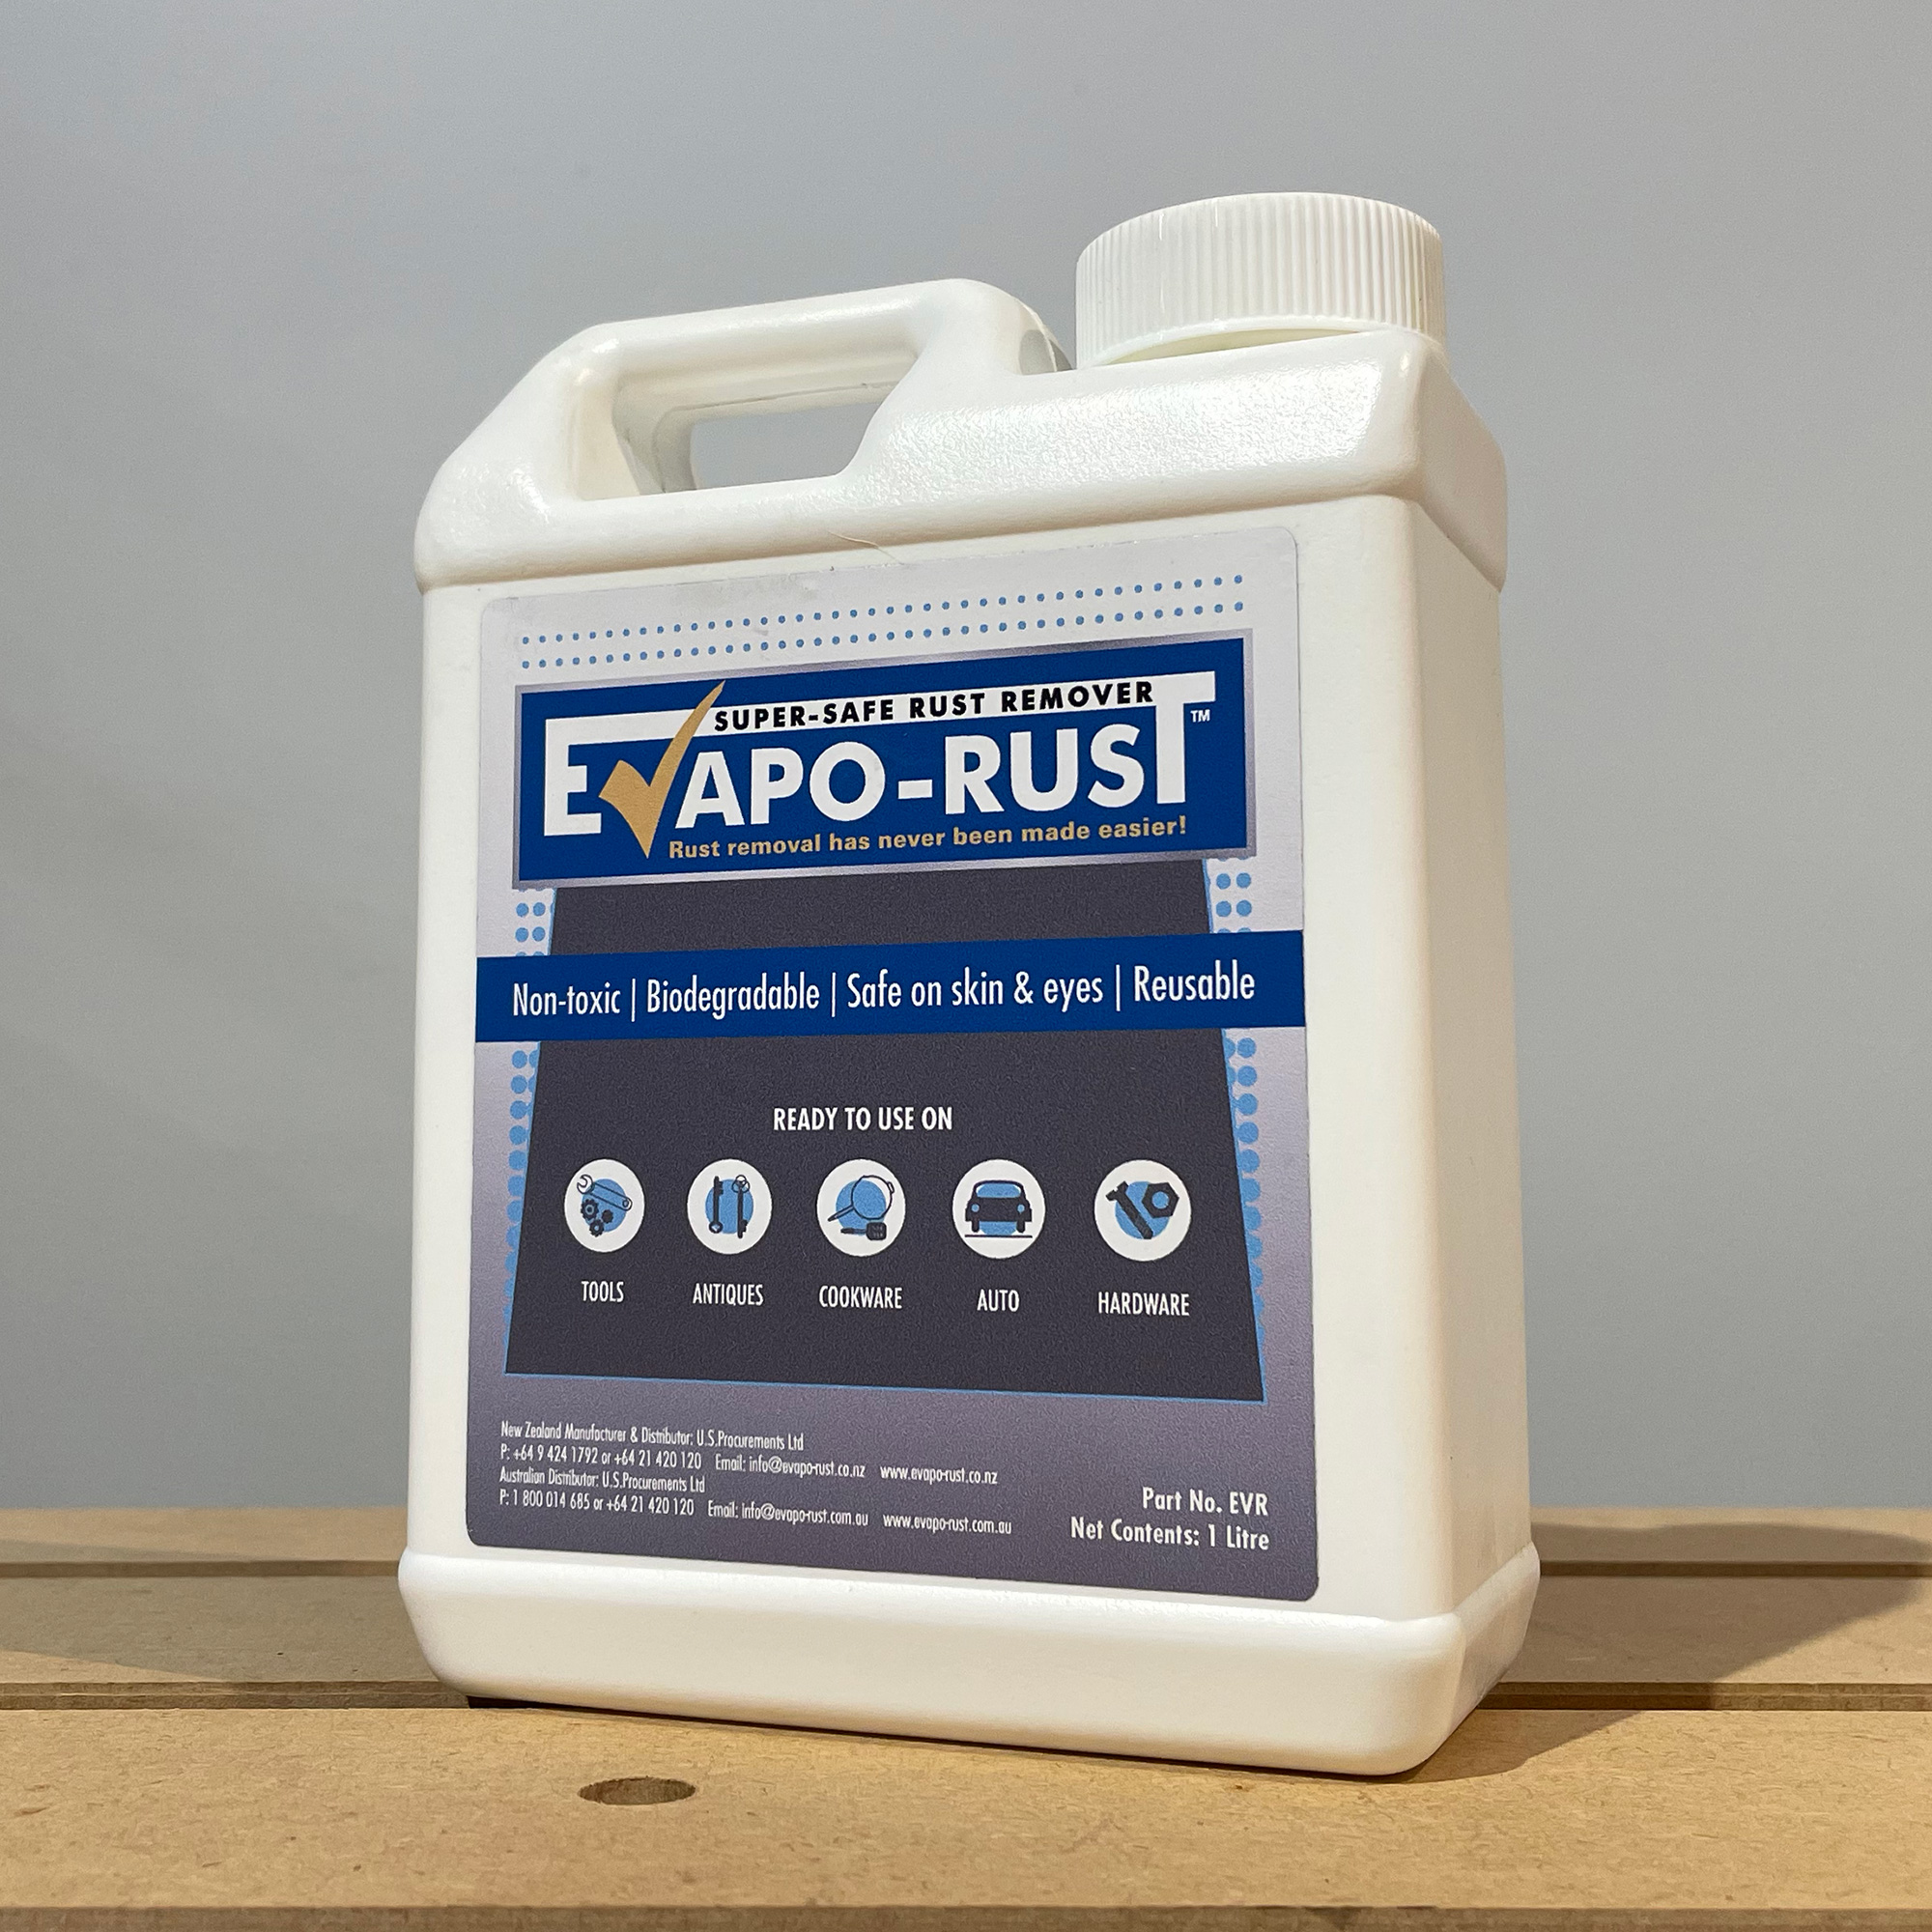 EVAPO Rust The Original Super Safe Rust Remover - 5 Gallon